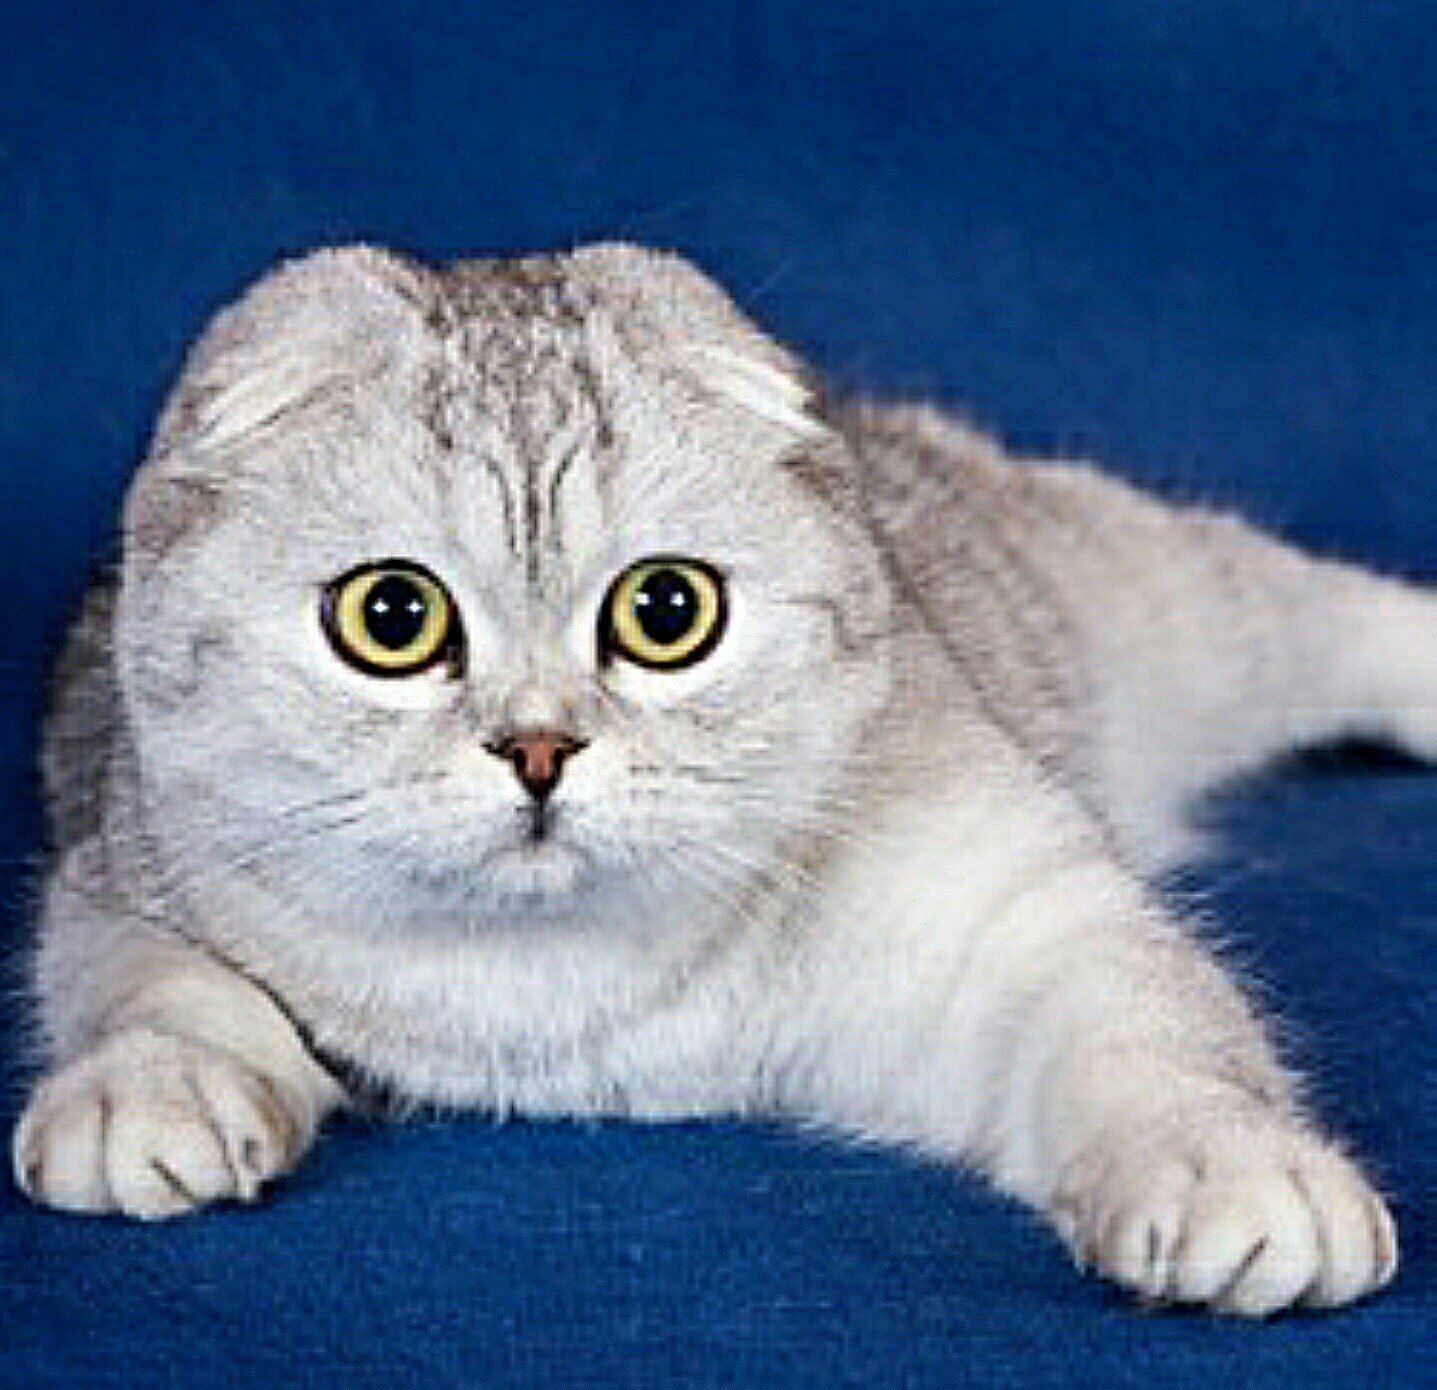 Фото вислоухой породы. Шотландская вислоухая кошка. Порода кошек скоттиш фолд. Шотландская порода. Тайская вислоухая.